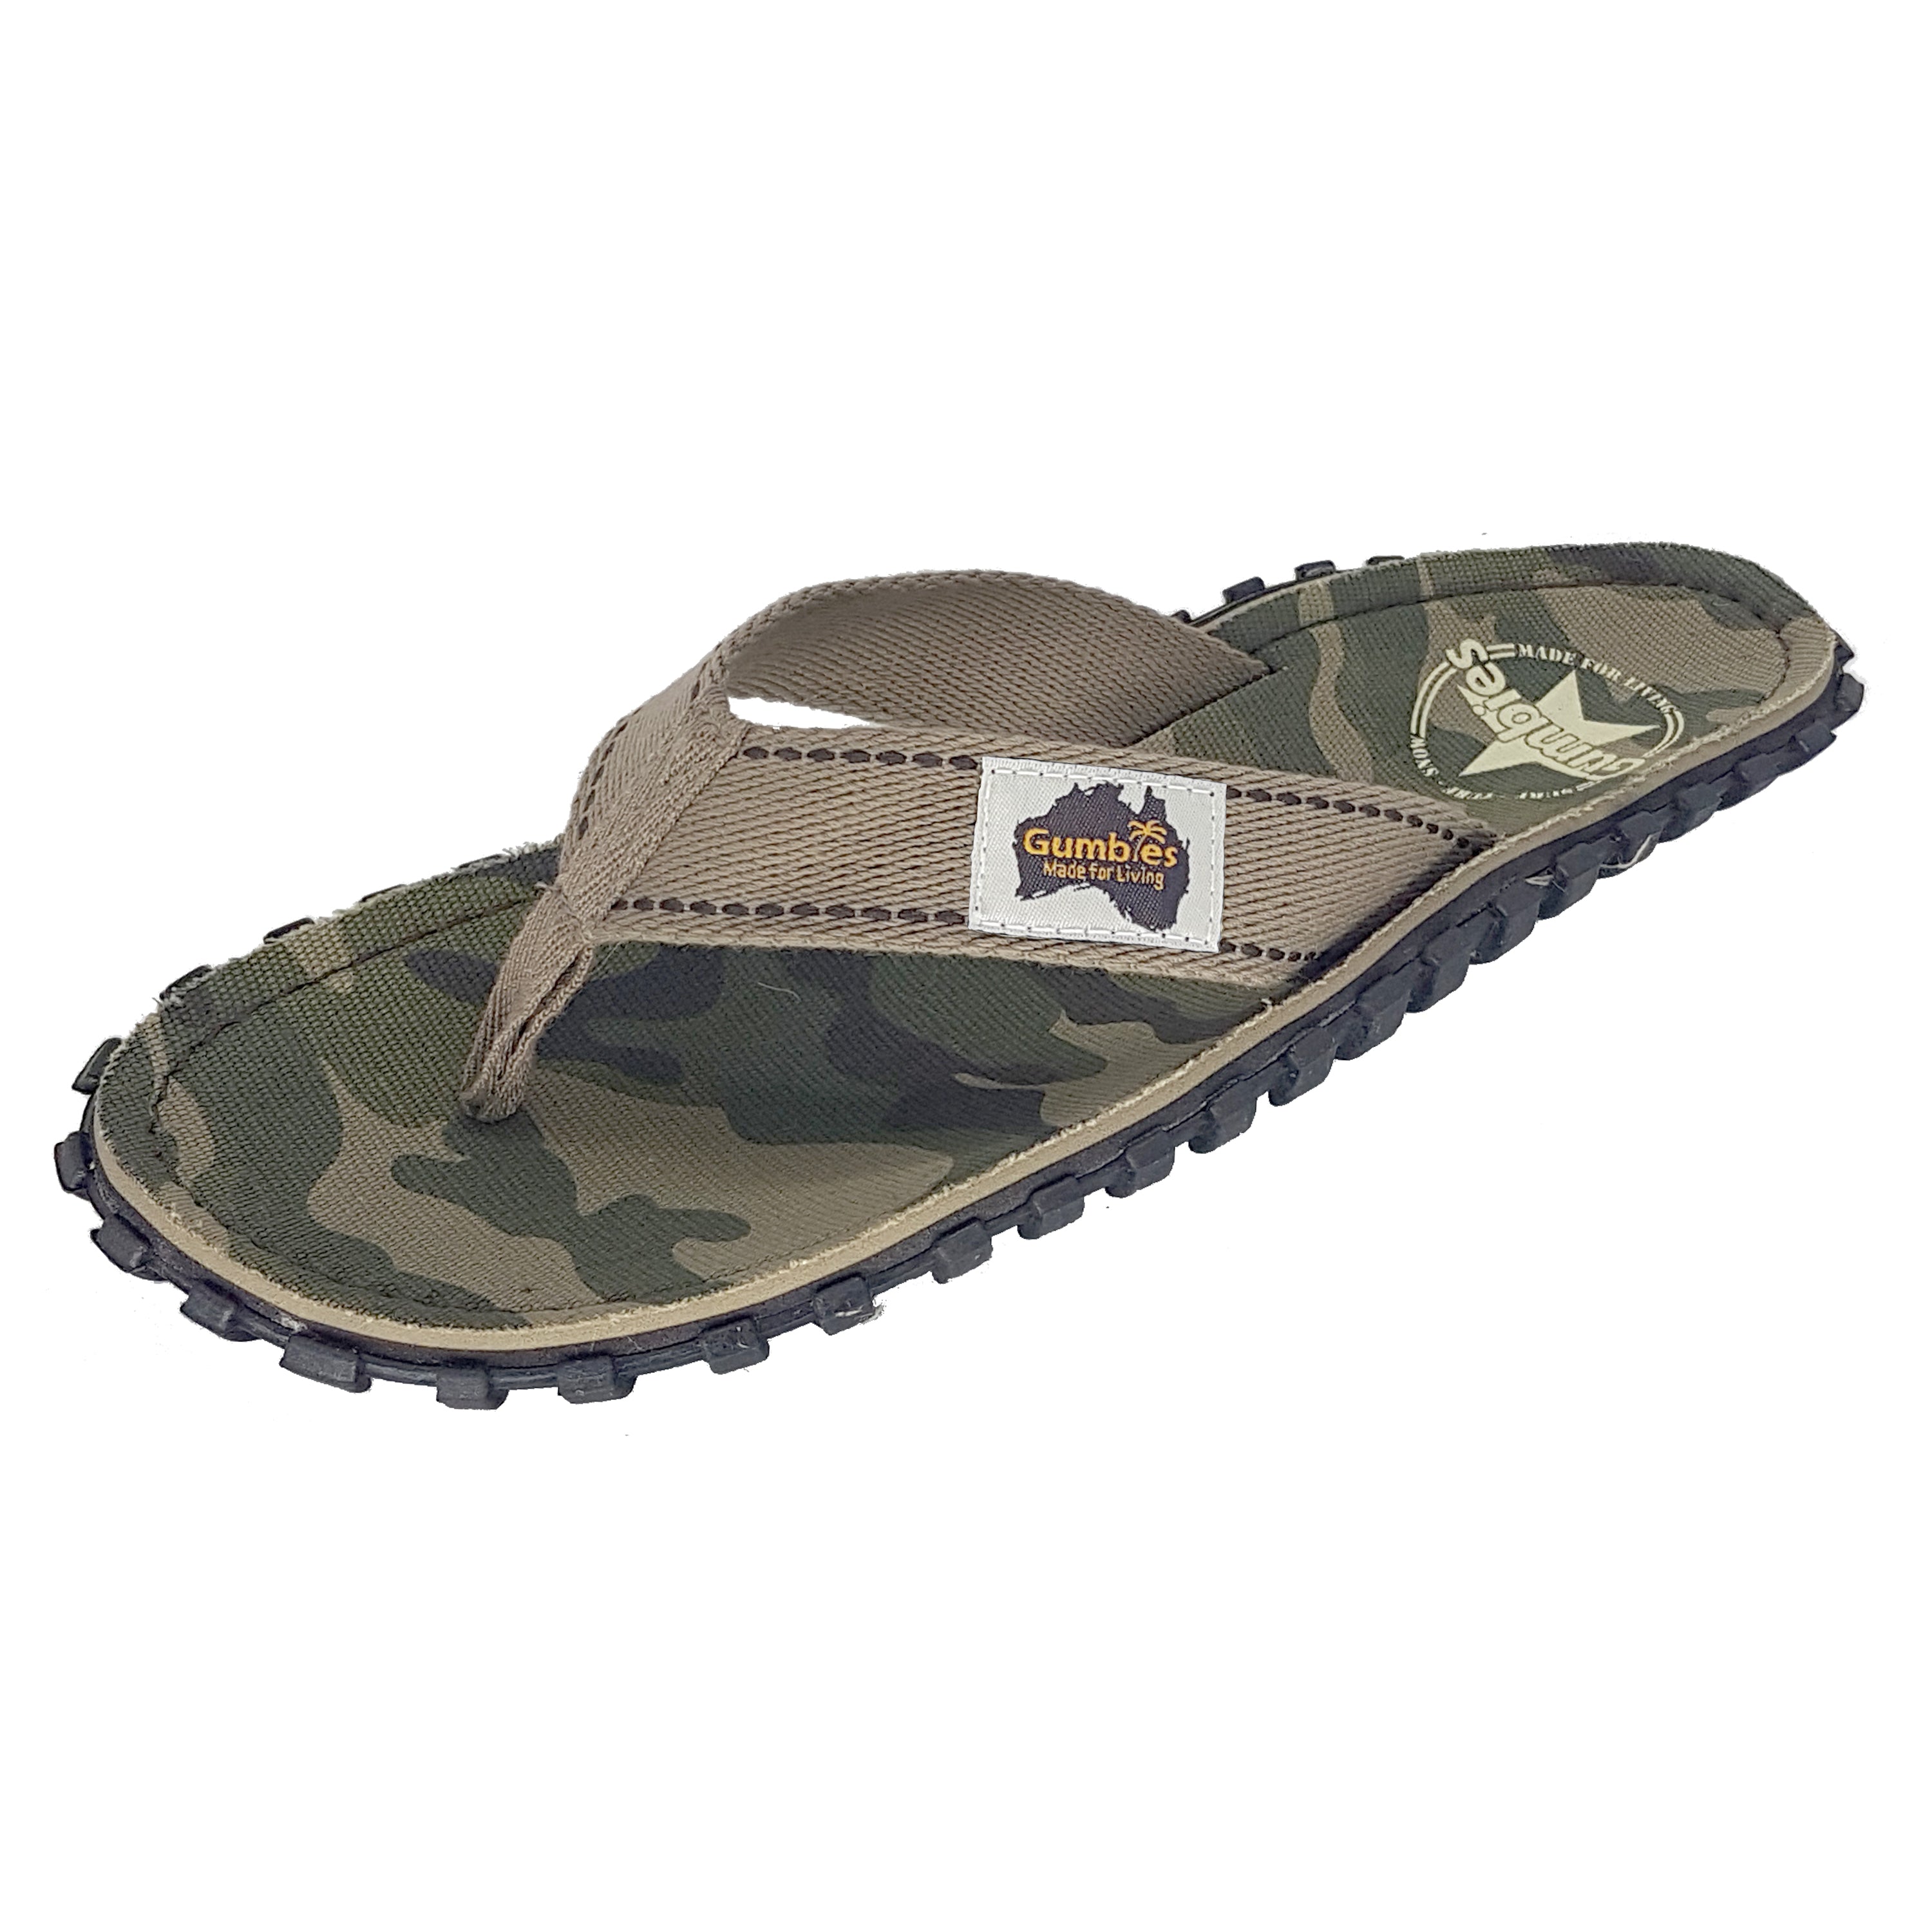 Islander Flip-Flops - Men's - Camouflage